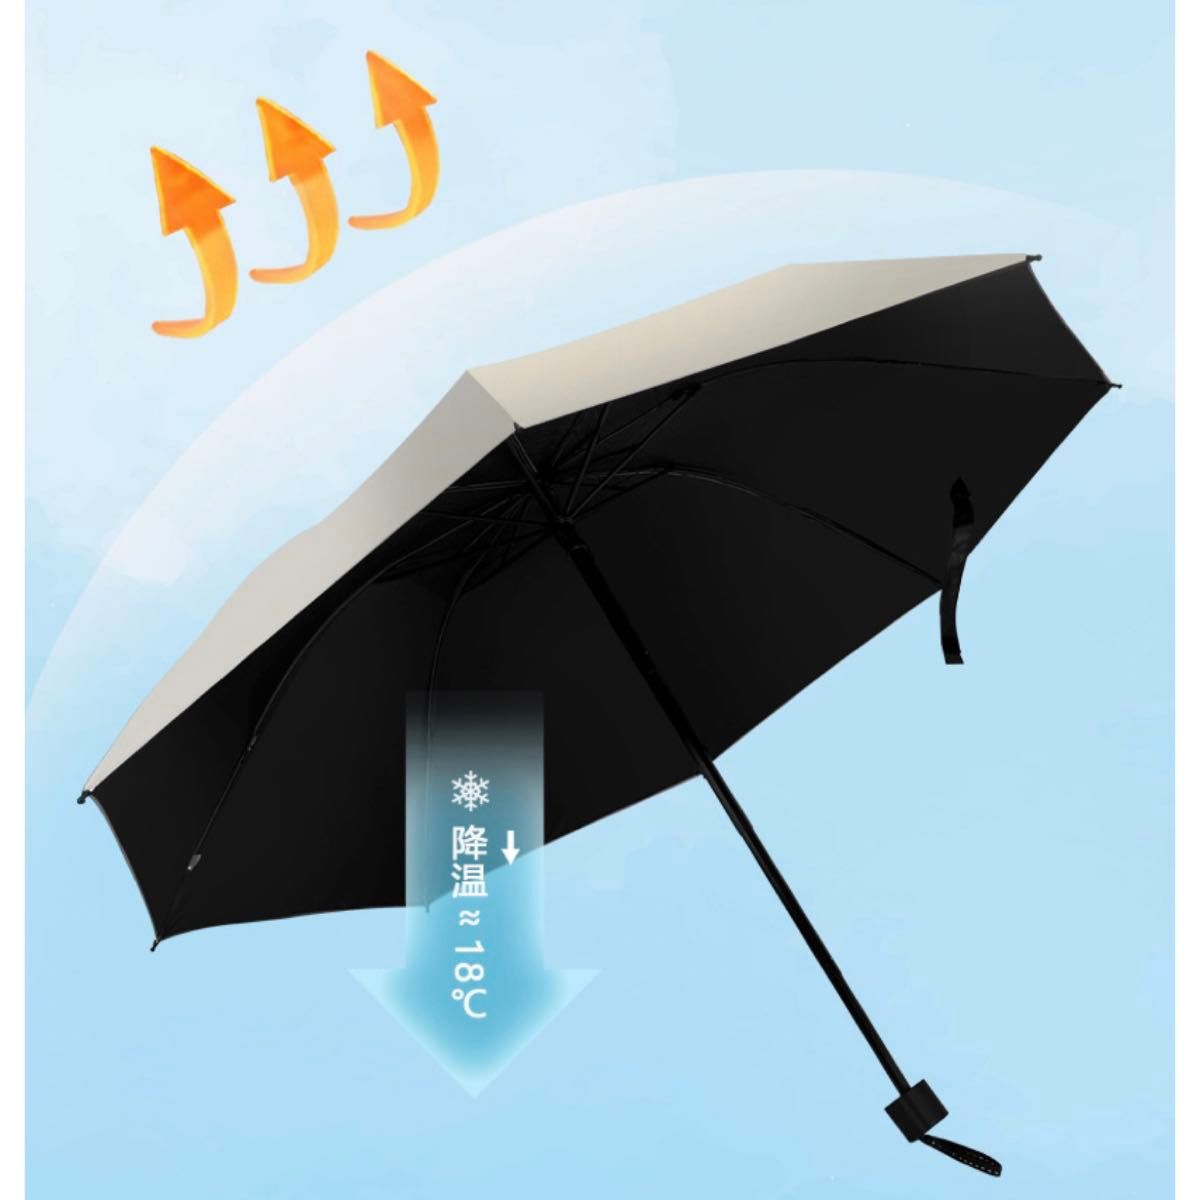 【即日発送】【訳あり】折り畳み傘 晴雨兼用 日傘 雨傘 日焼け止め 紫外線防止 軽量 梅雨対策 折りたたみ傘 ブルー